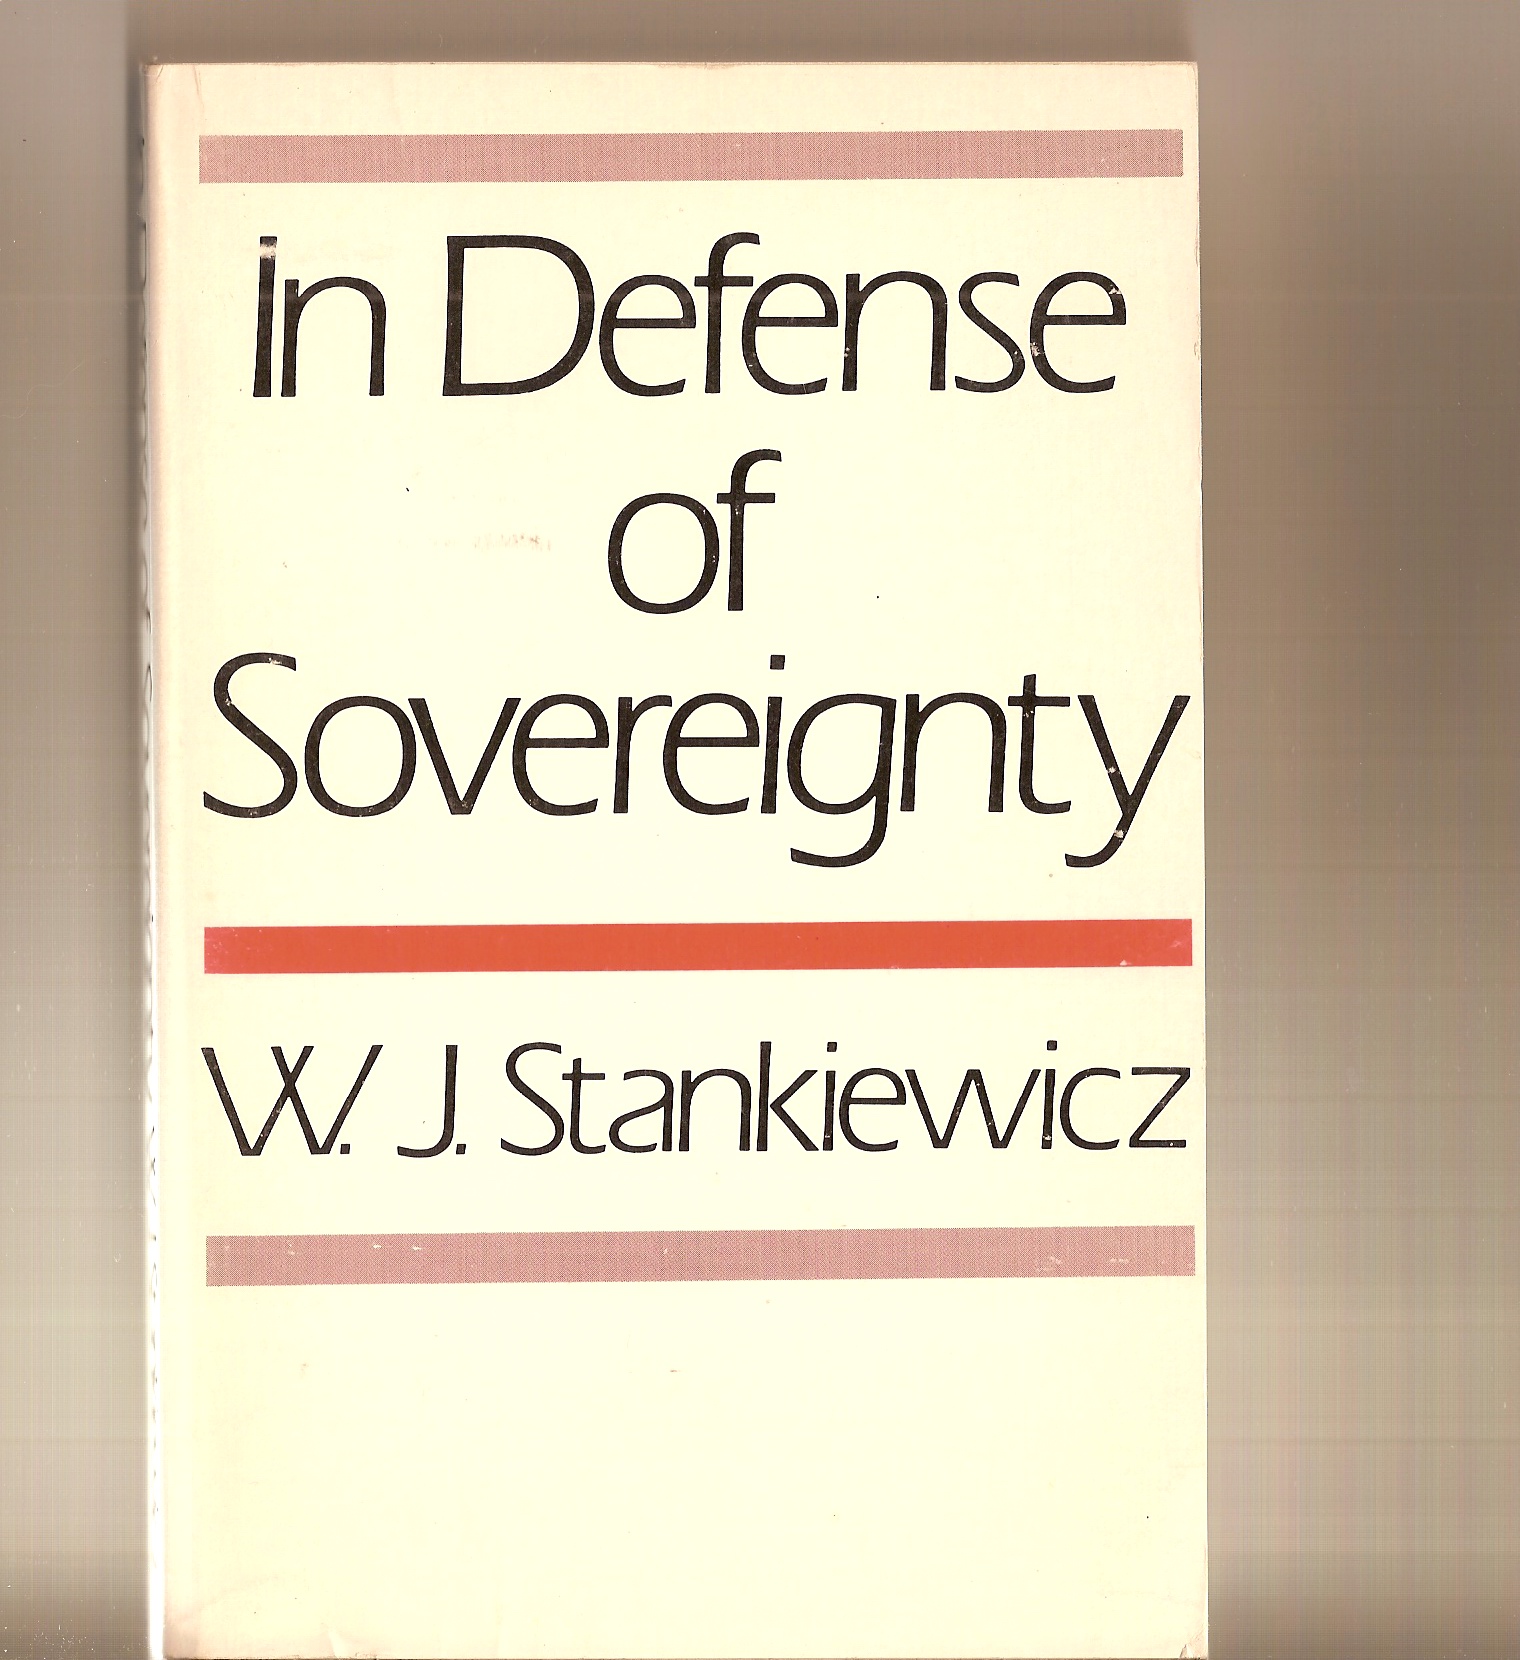 STANKIEWICZ W. J. - In Defense of Sovereignty